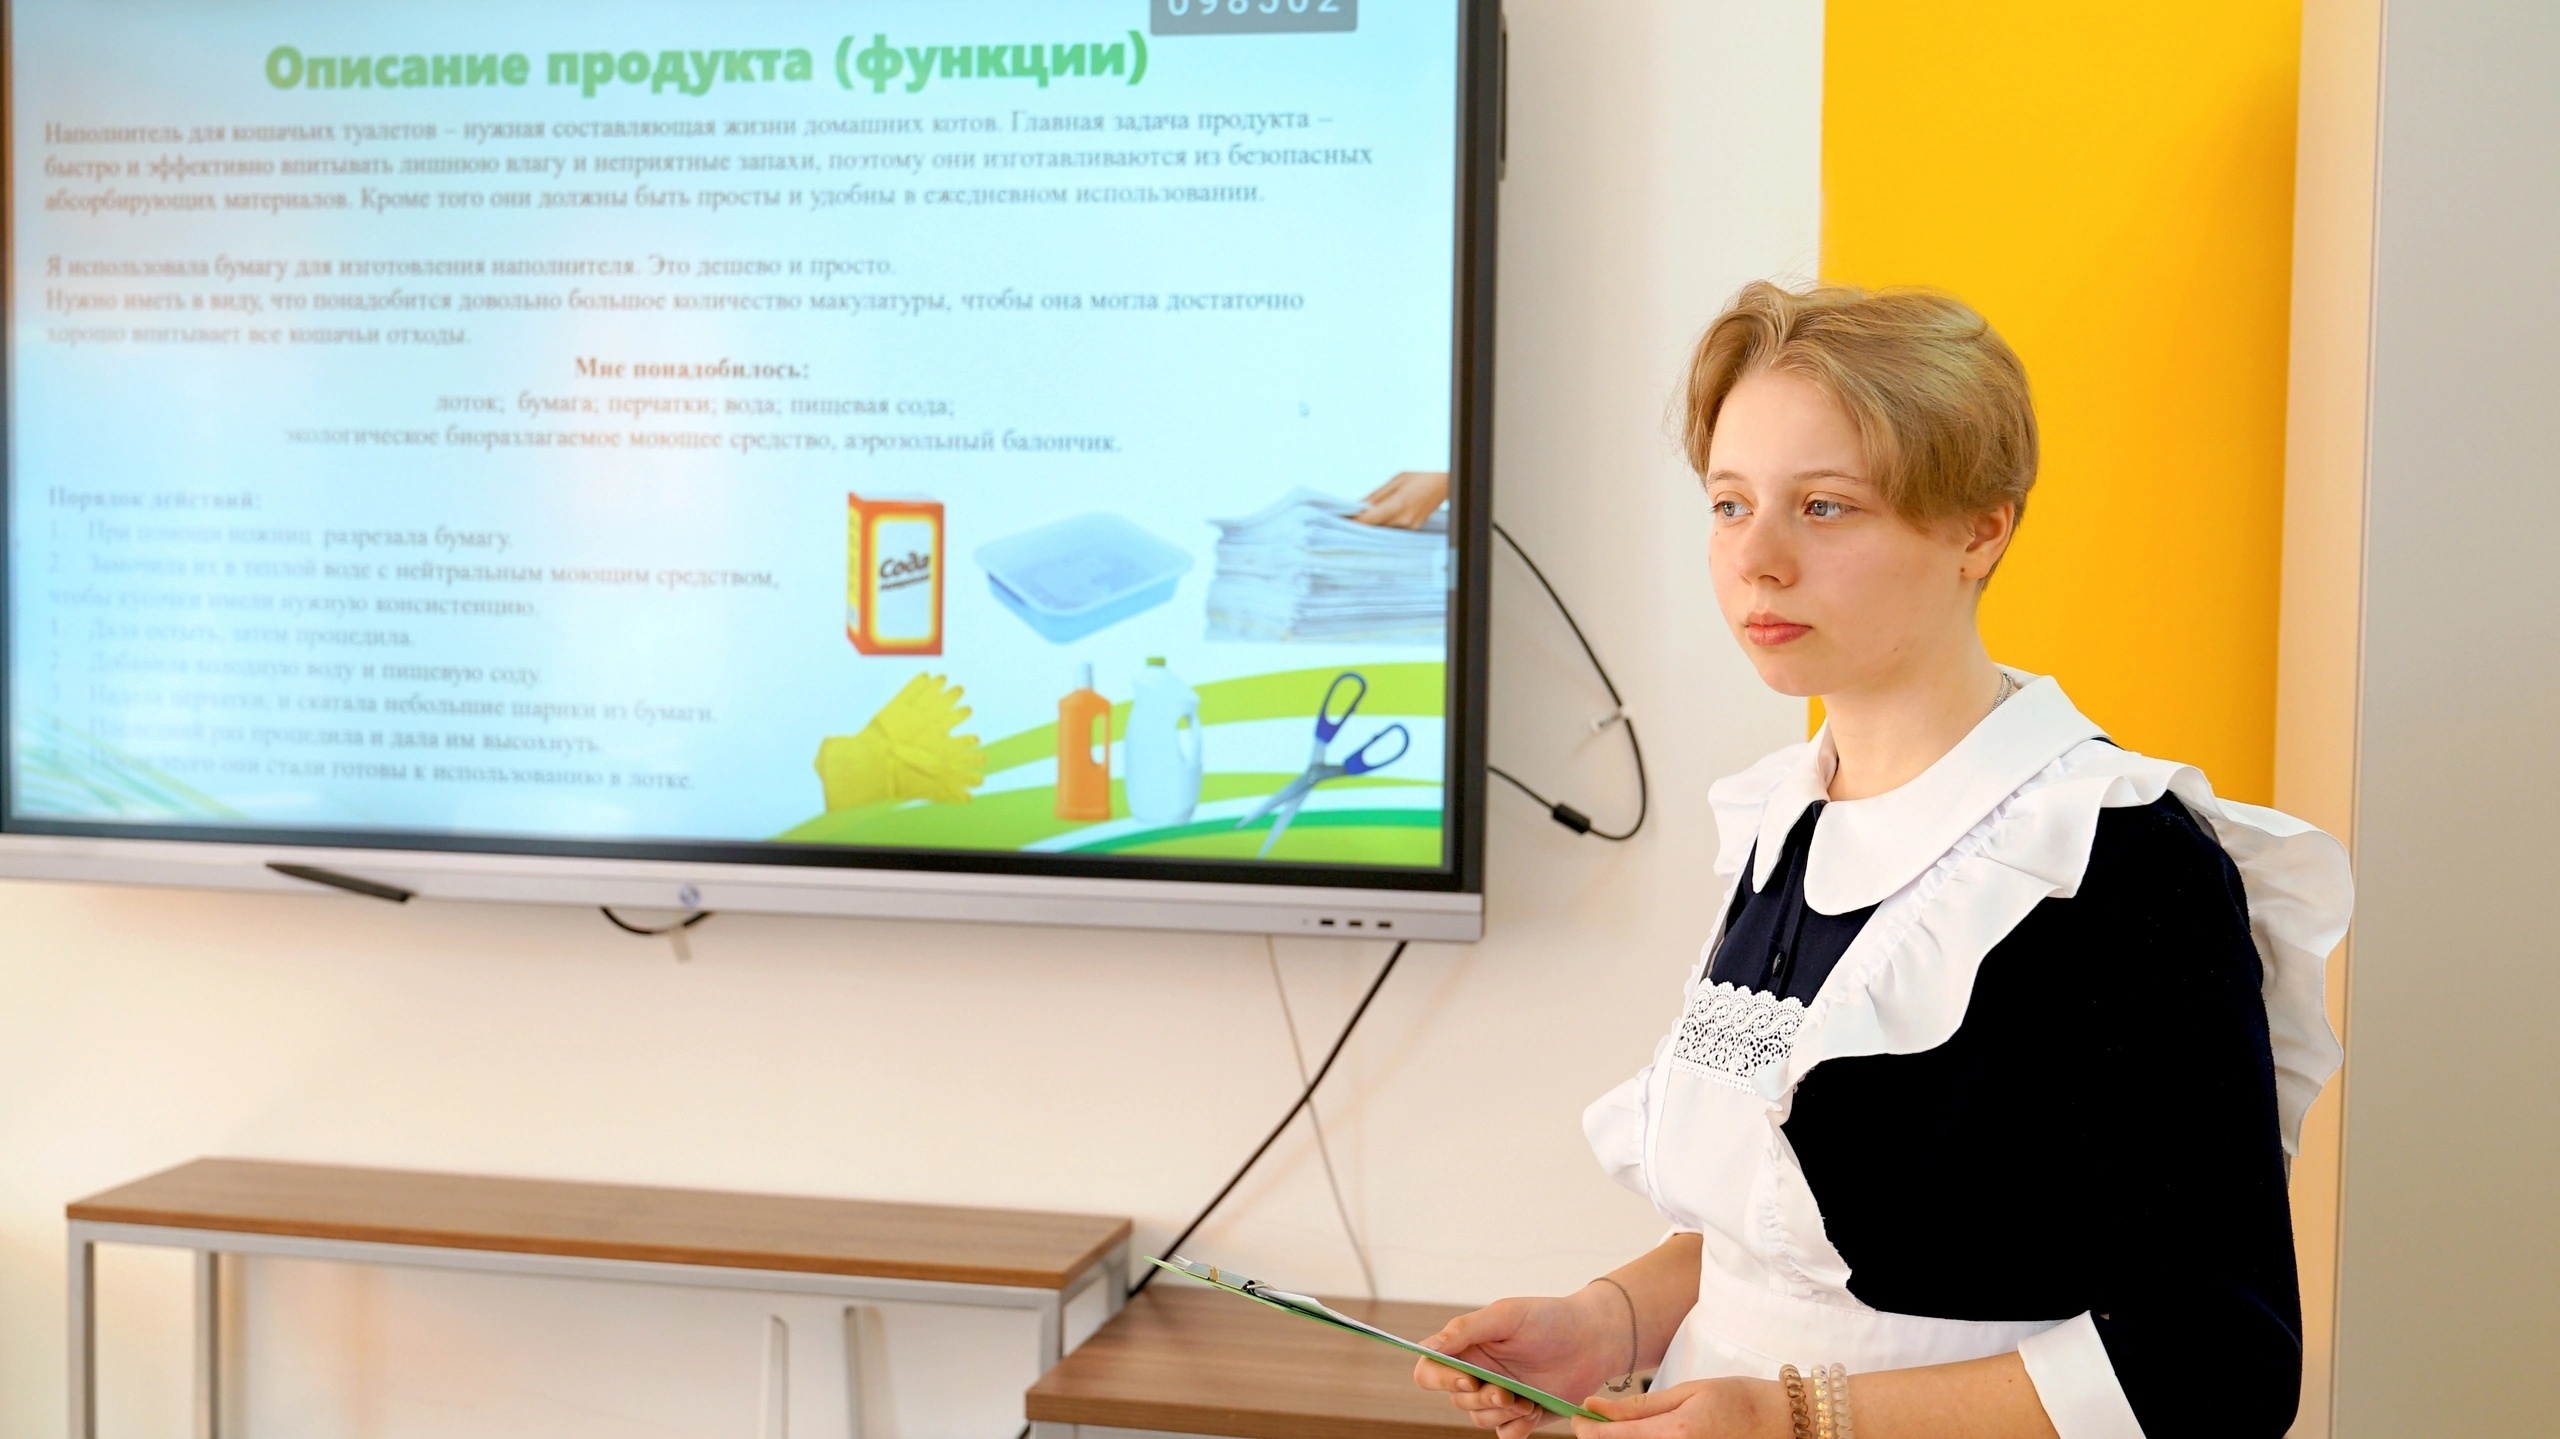 Всероссийский конкурс научно-технологических проектов «Большие вызовы 2023/2024».